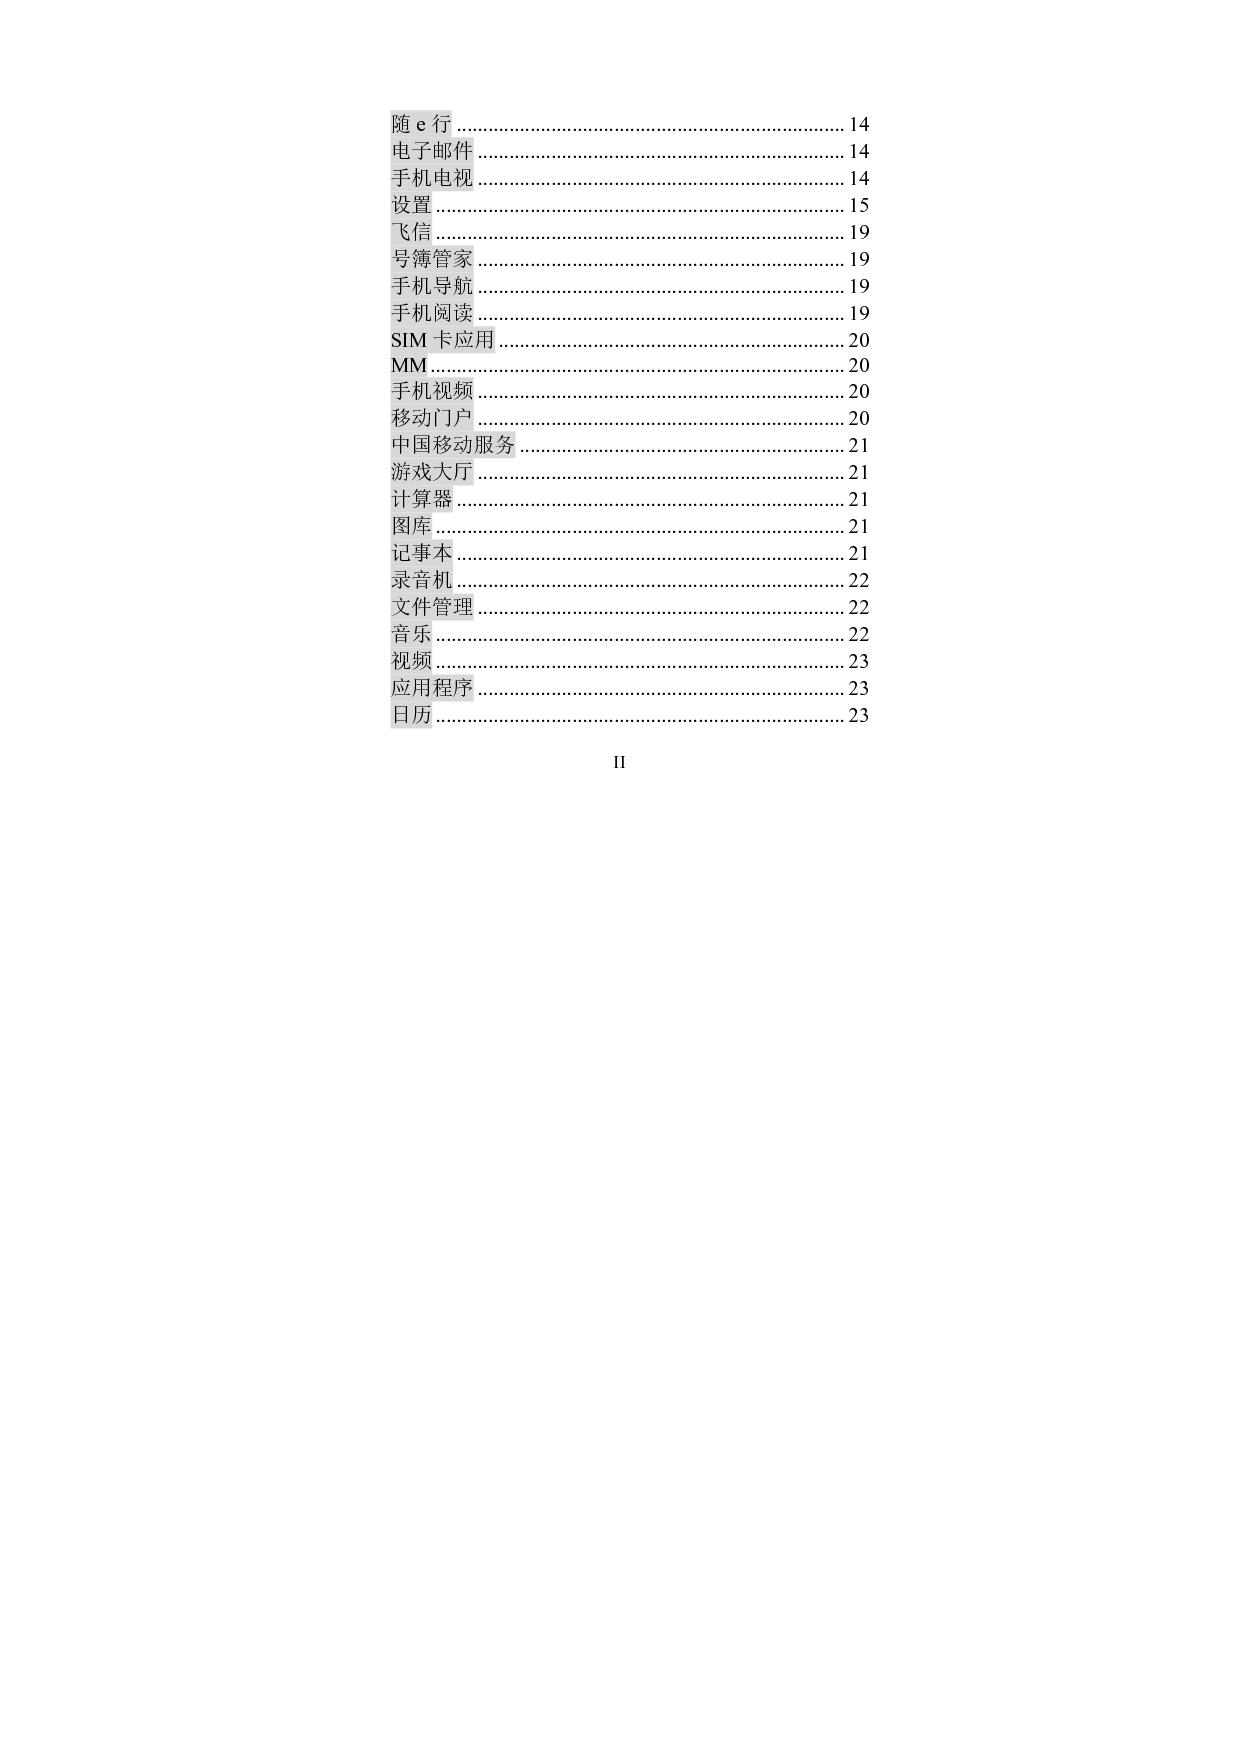 海信 Hisense HS-T92 用户指南 第2页